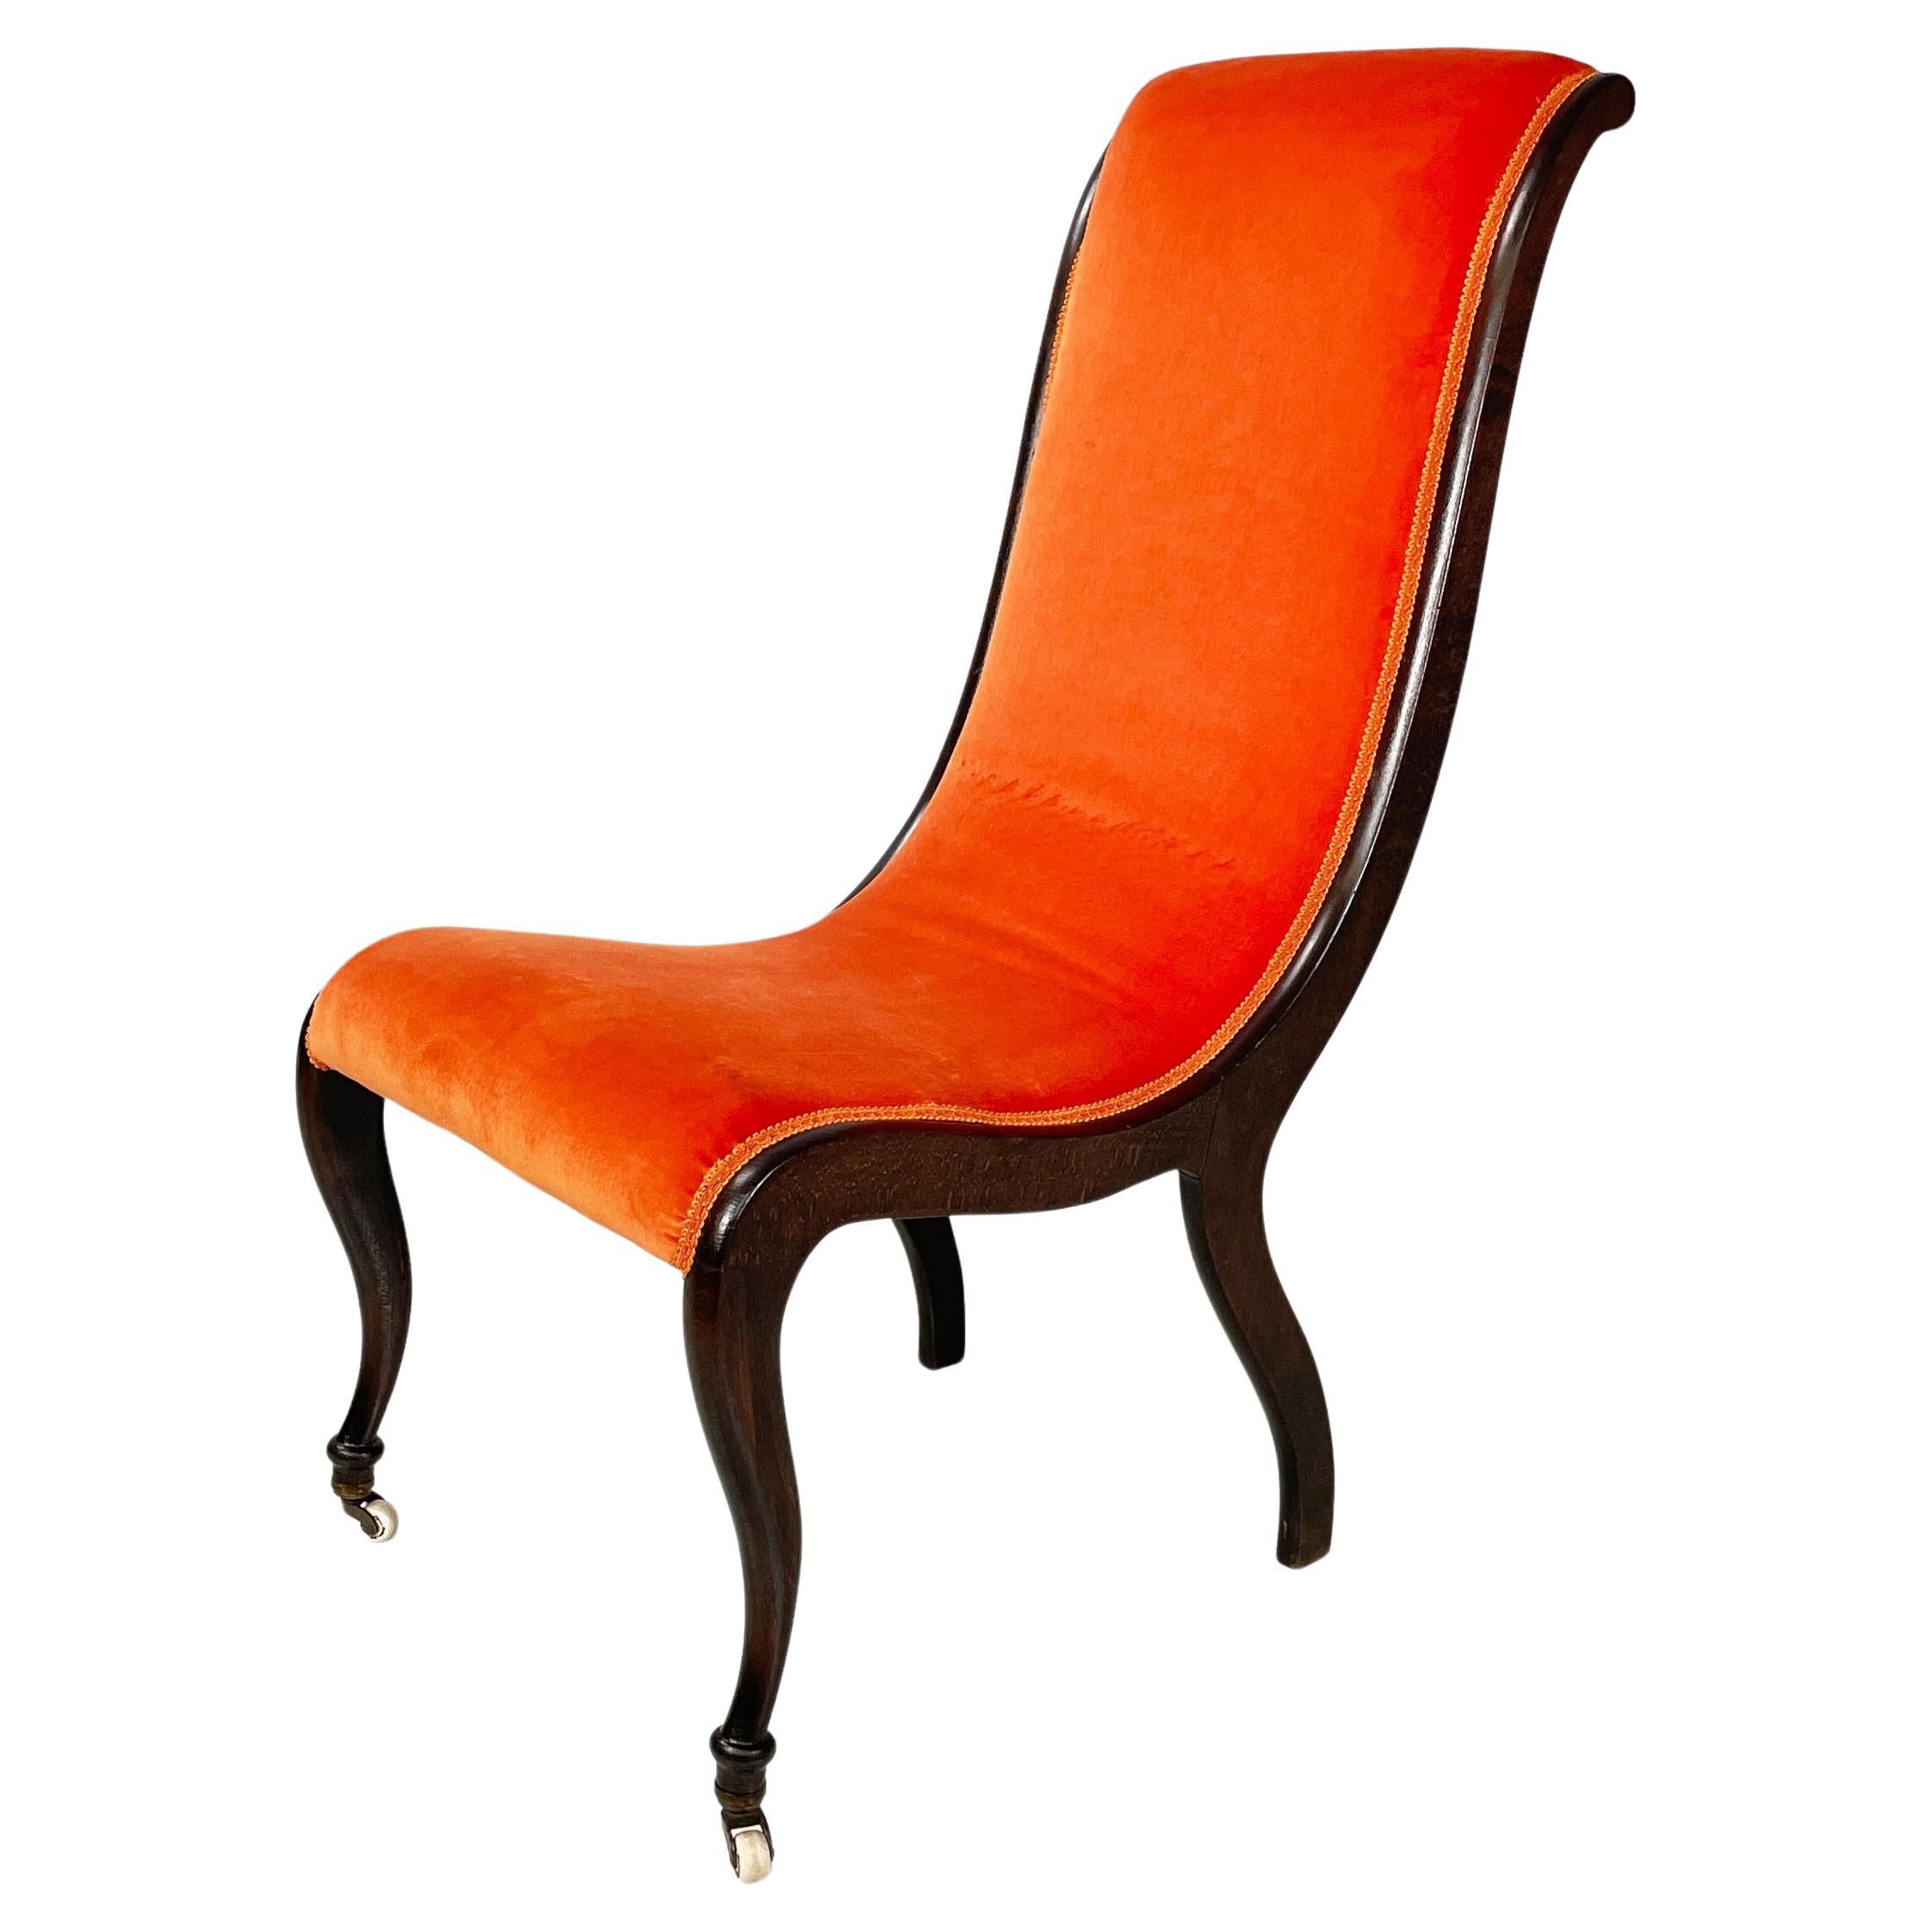 Danish mid-century modern Chair in orange velvet and dark wood, 1950s For Sale